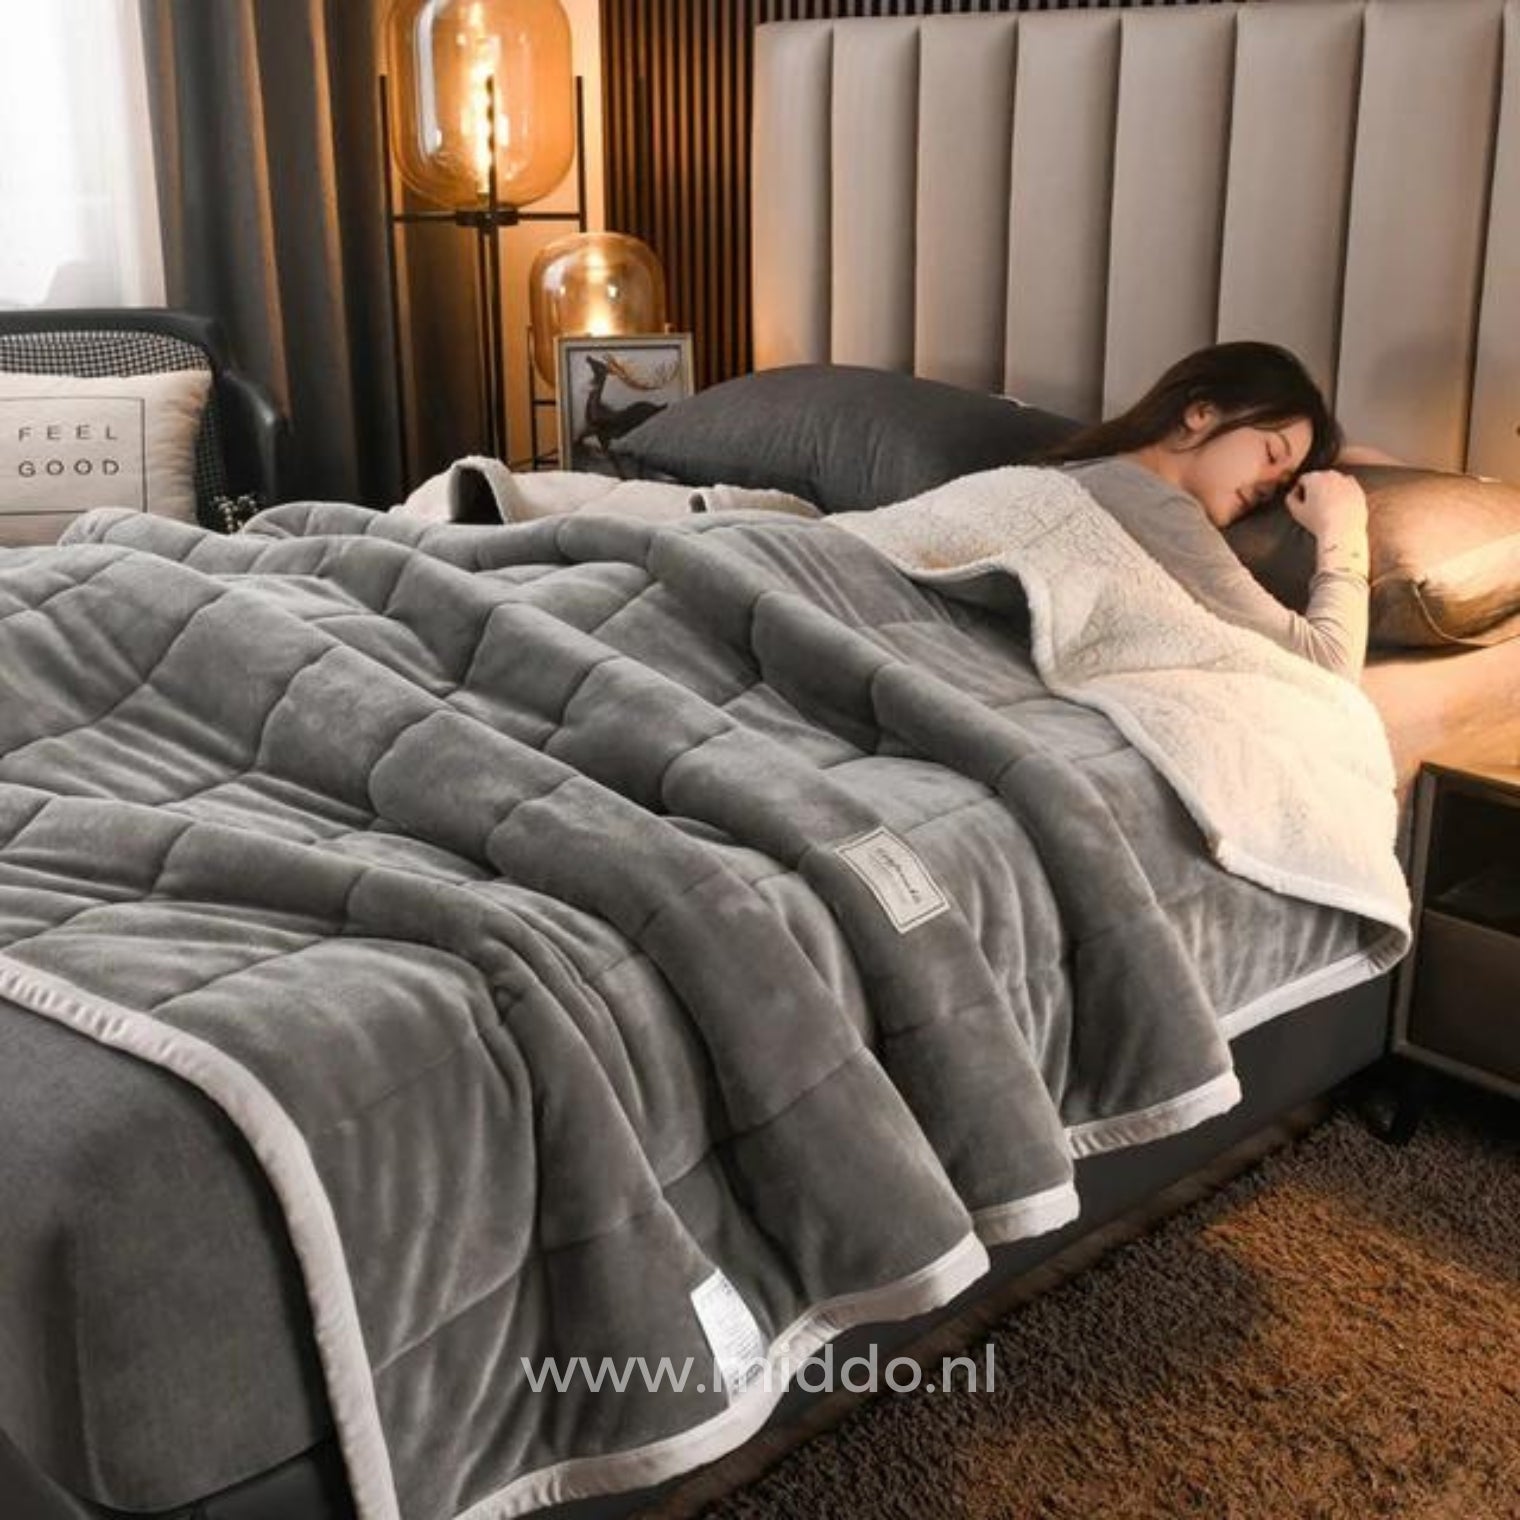 CozyFleece grijs pluche woldeken op bed met slapende persoon